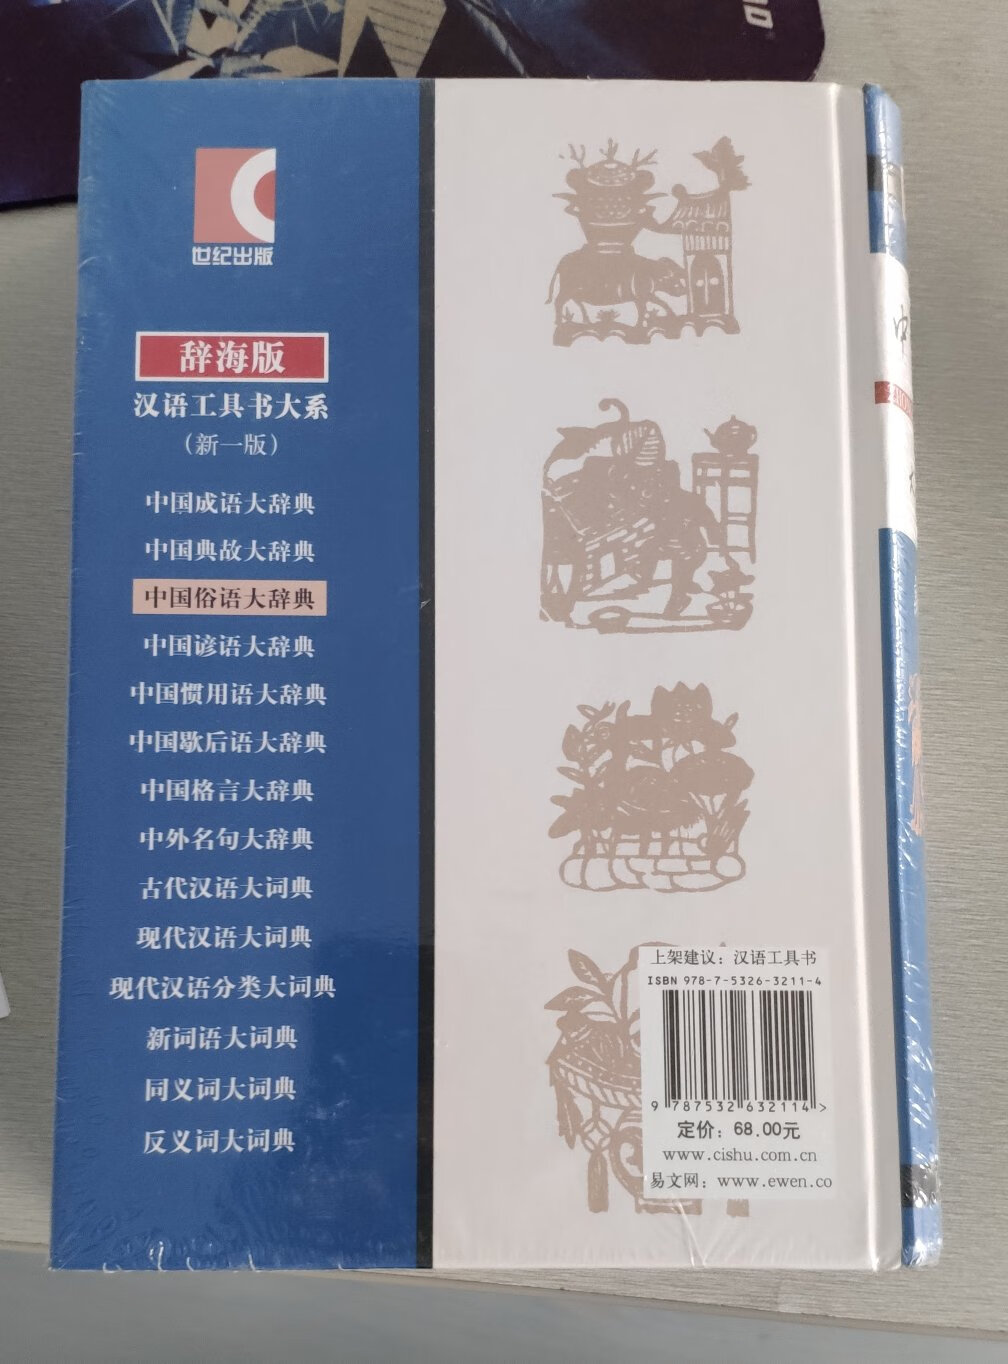 ~公众号推荐的书，买回来，作为工具书使用，上海辞书出版社在辞书这方面还是很权威的。